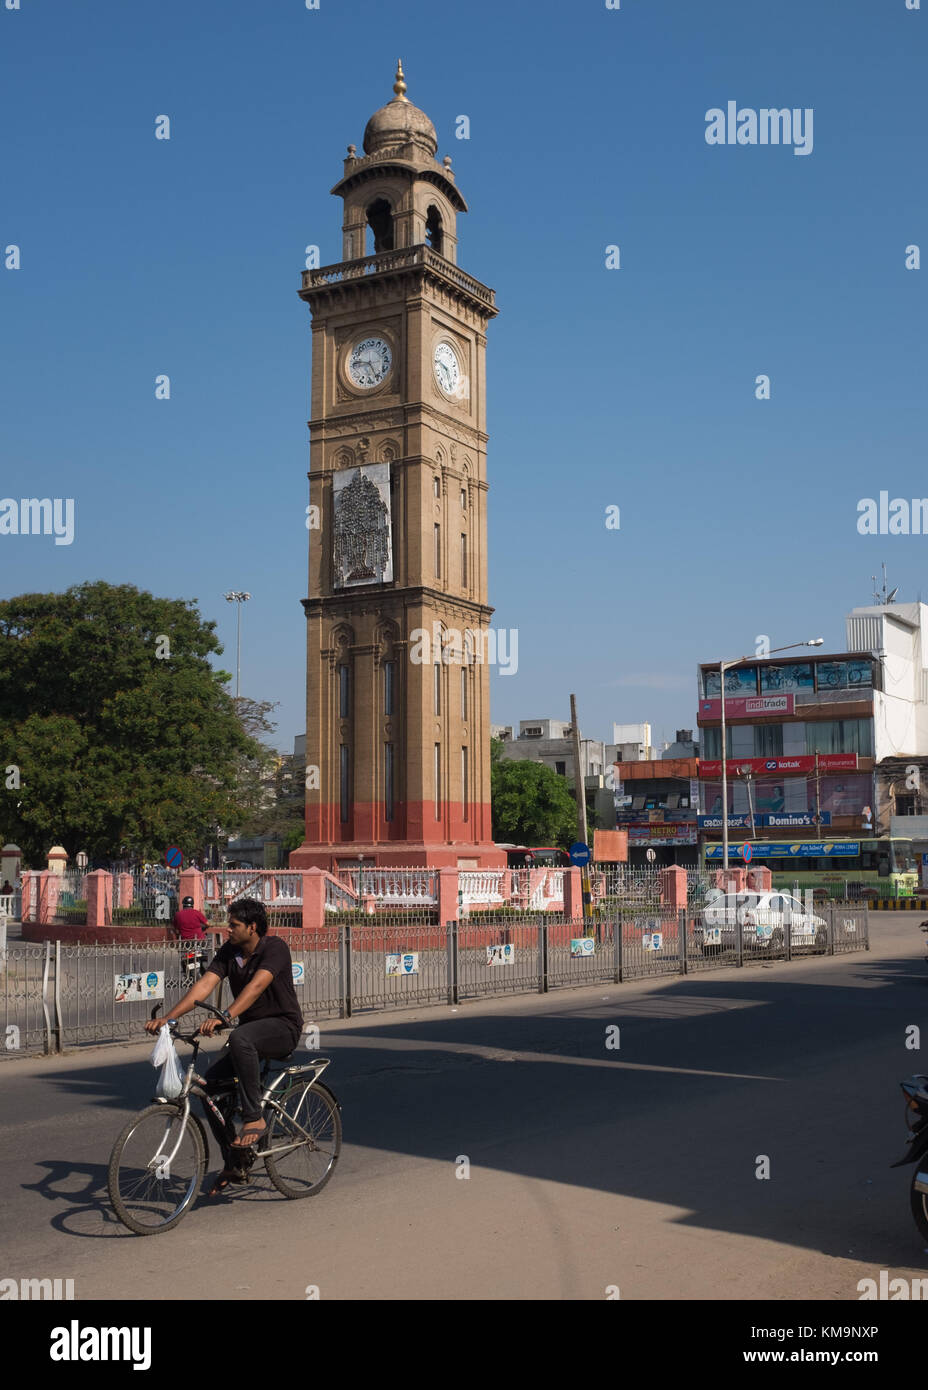 Tour de l'horloge de son jubilé d'argent au centre du rond-point, l'homme à vélo sur route en avant-plan, mysuru à Mysore, Karnataka, Inde. Banque D'Images